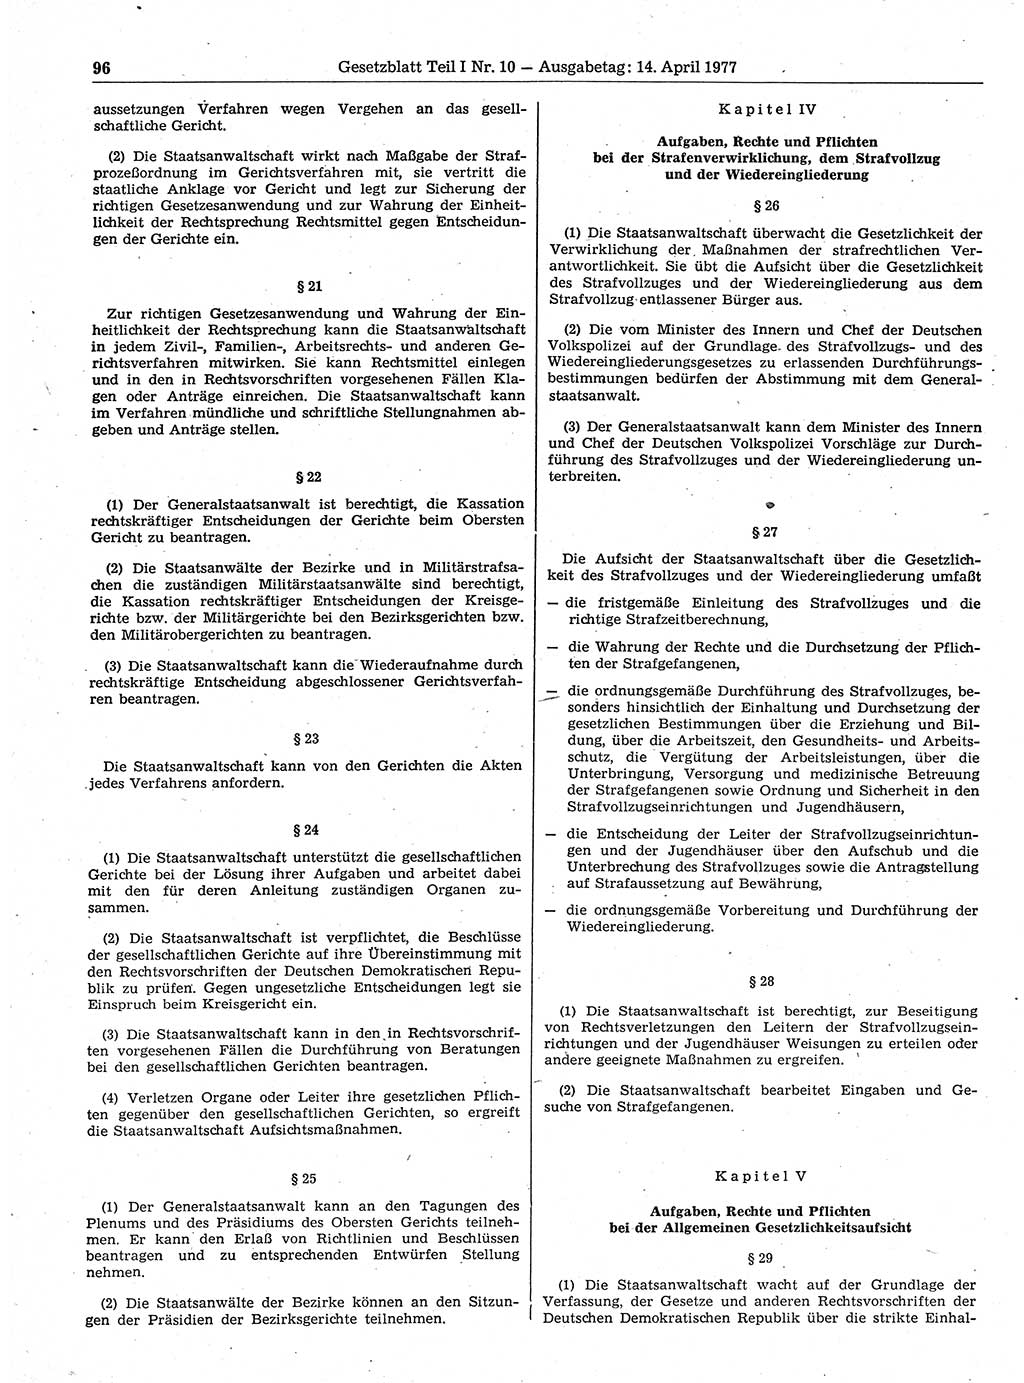 Gesetzblatt (GBl.) der Deutschen Demokratischen Republik (DDR) Teil Ⅰ 1977, Seite 96 (GBl. DDR Ⅰ 1977, S. 96)